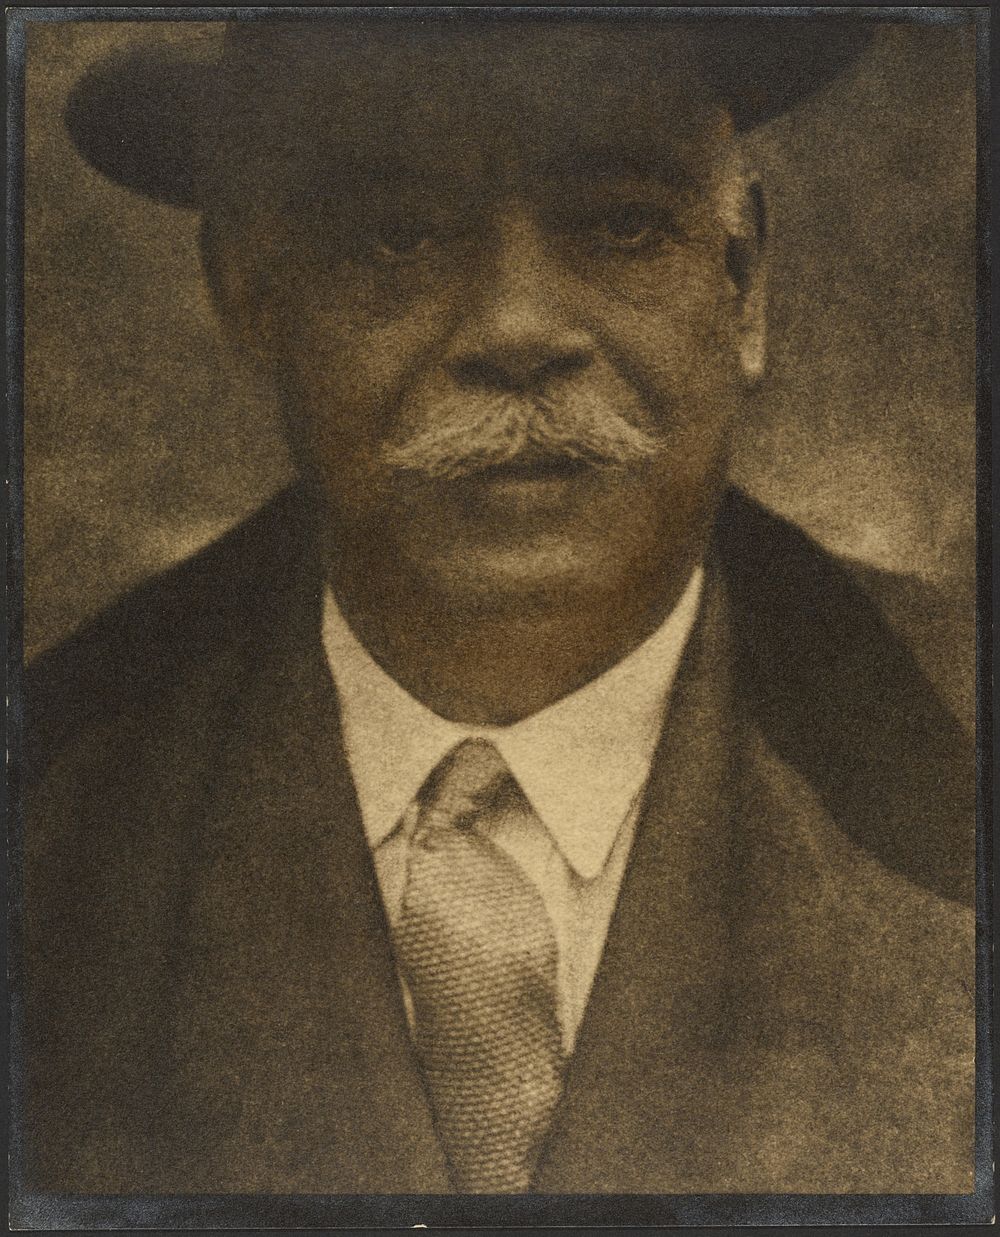 Portrait of a Man with Hat Brim by Louis Fleckenstein